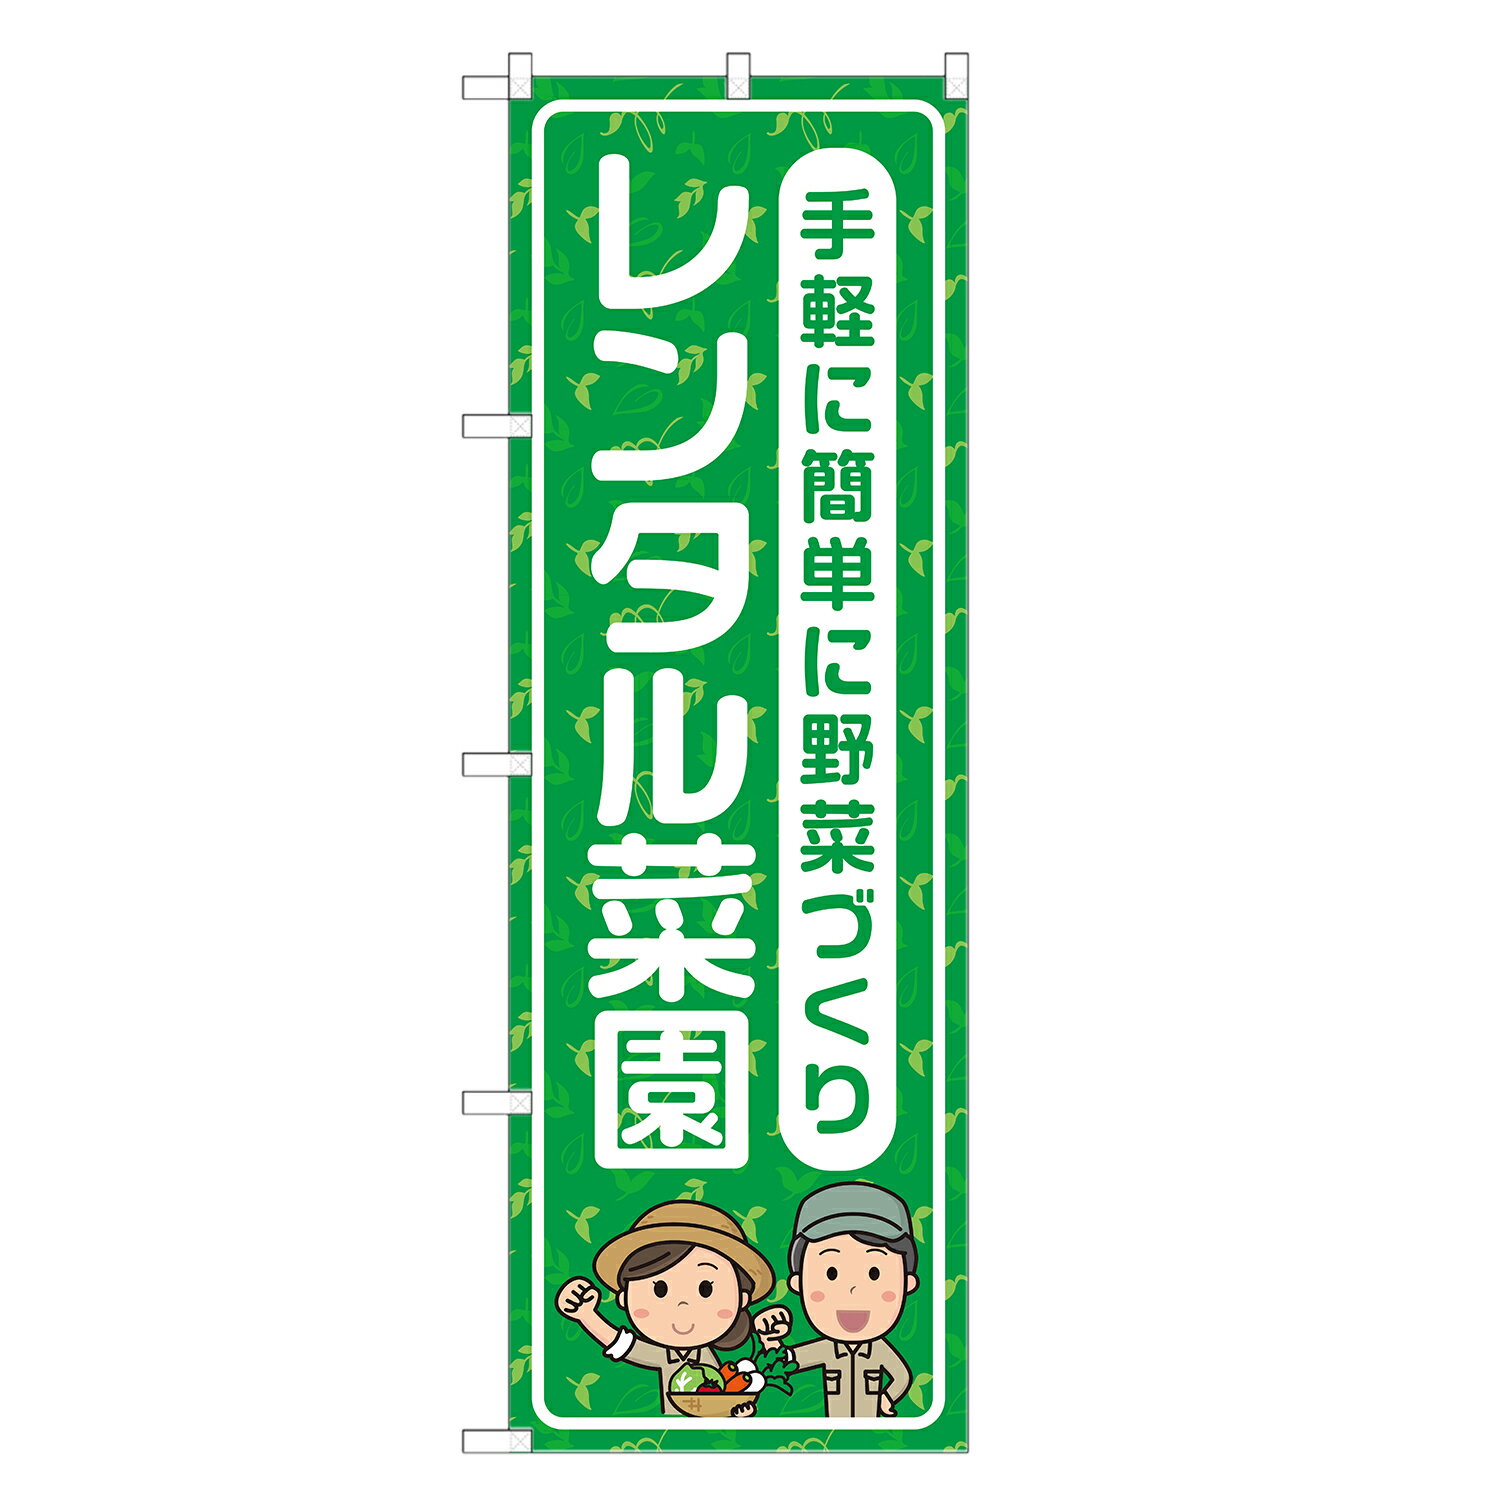 のぼり旗 レンタル菜園 四方三巻縫製 S26-0019B-R